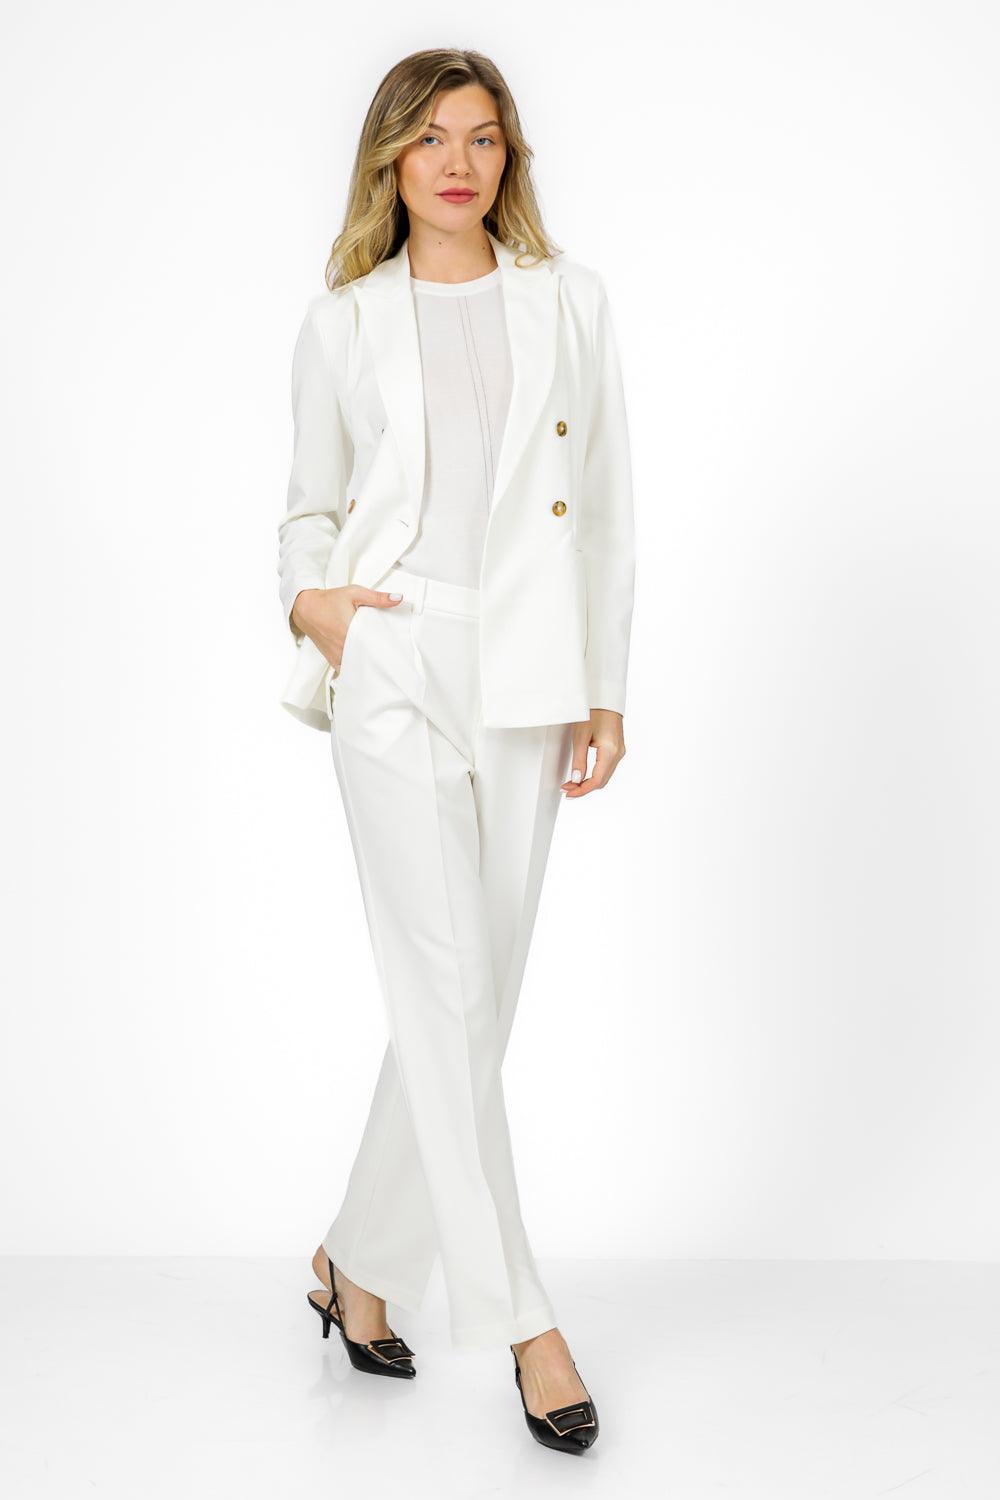 KENNETH COLE - מכנסיים מחוייטים בצבע לבן - MASHBIR//365